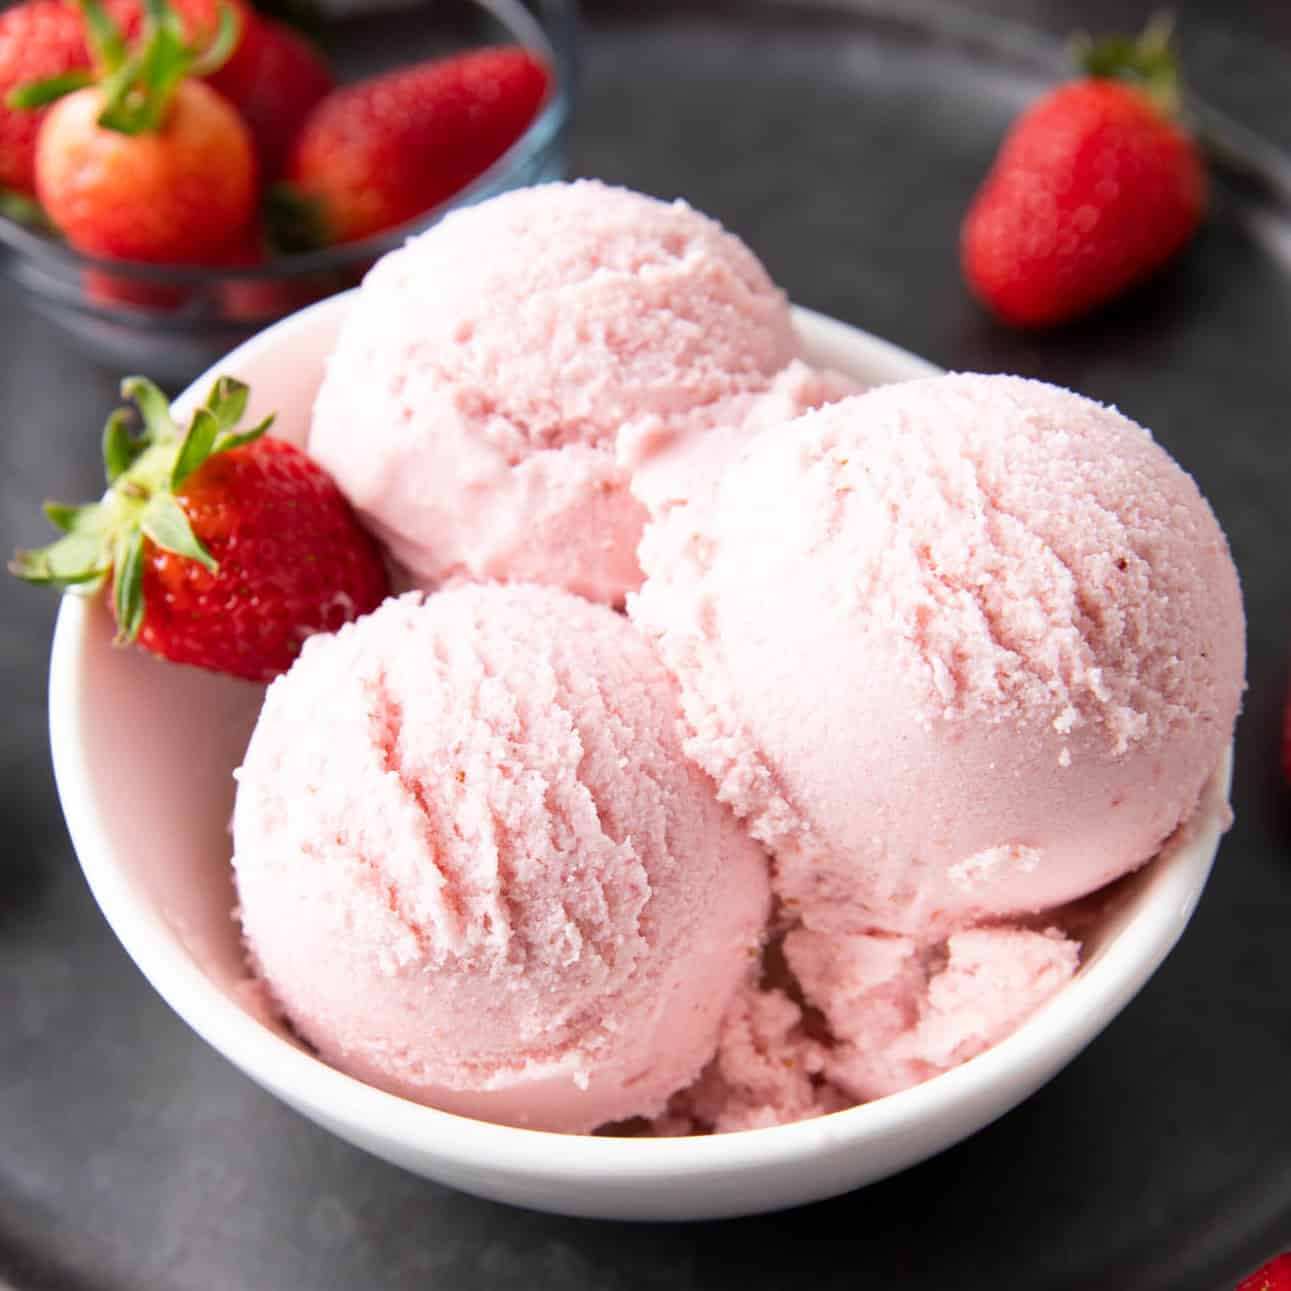 Best Strawberry Vegan Ice Cream! (Dairy-Free)